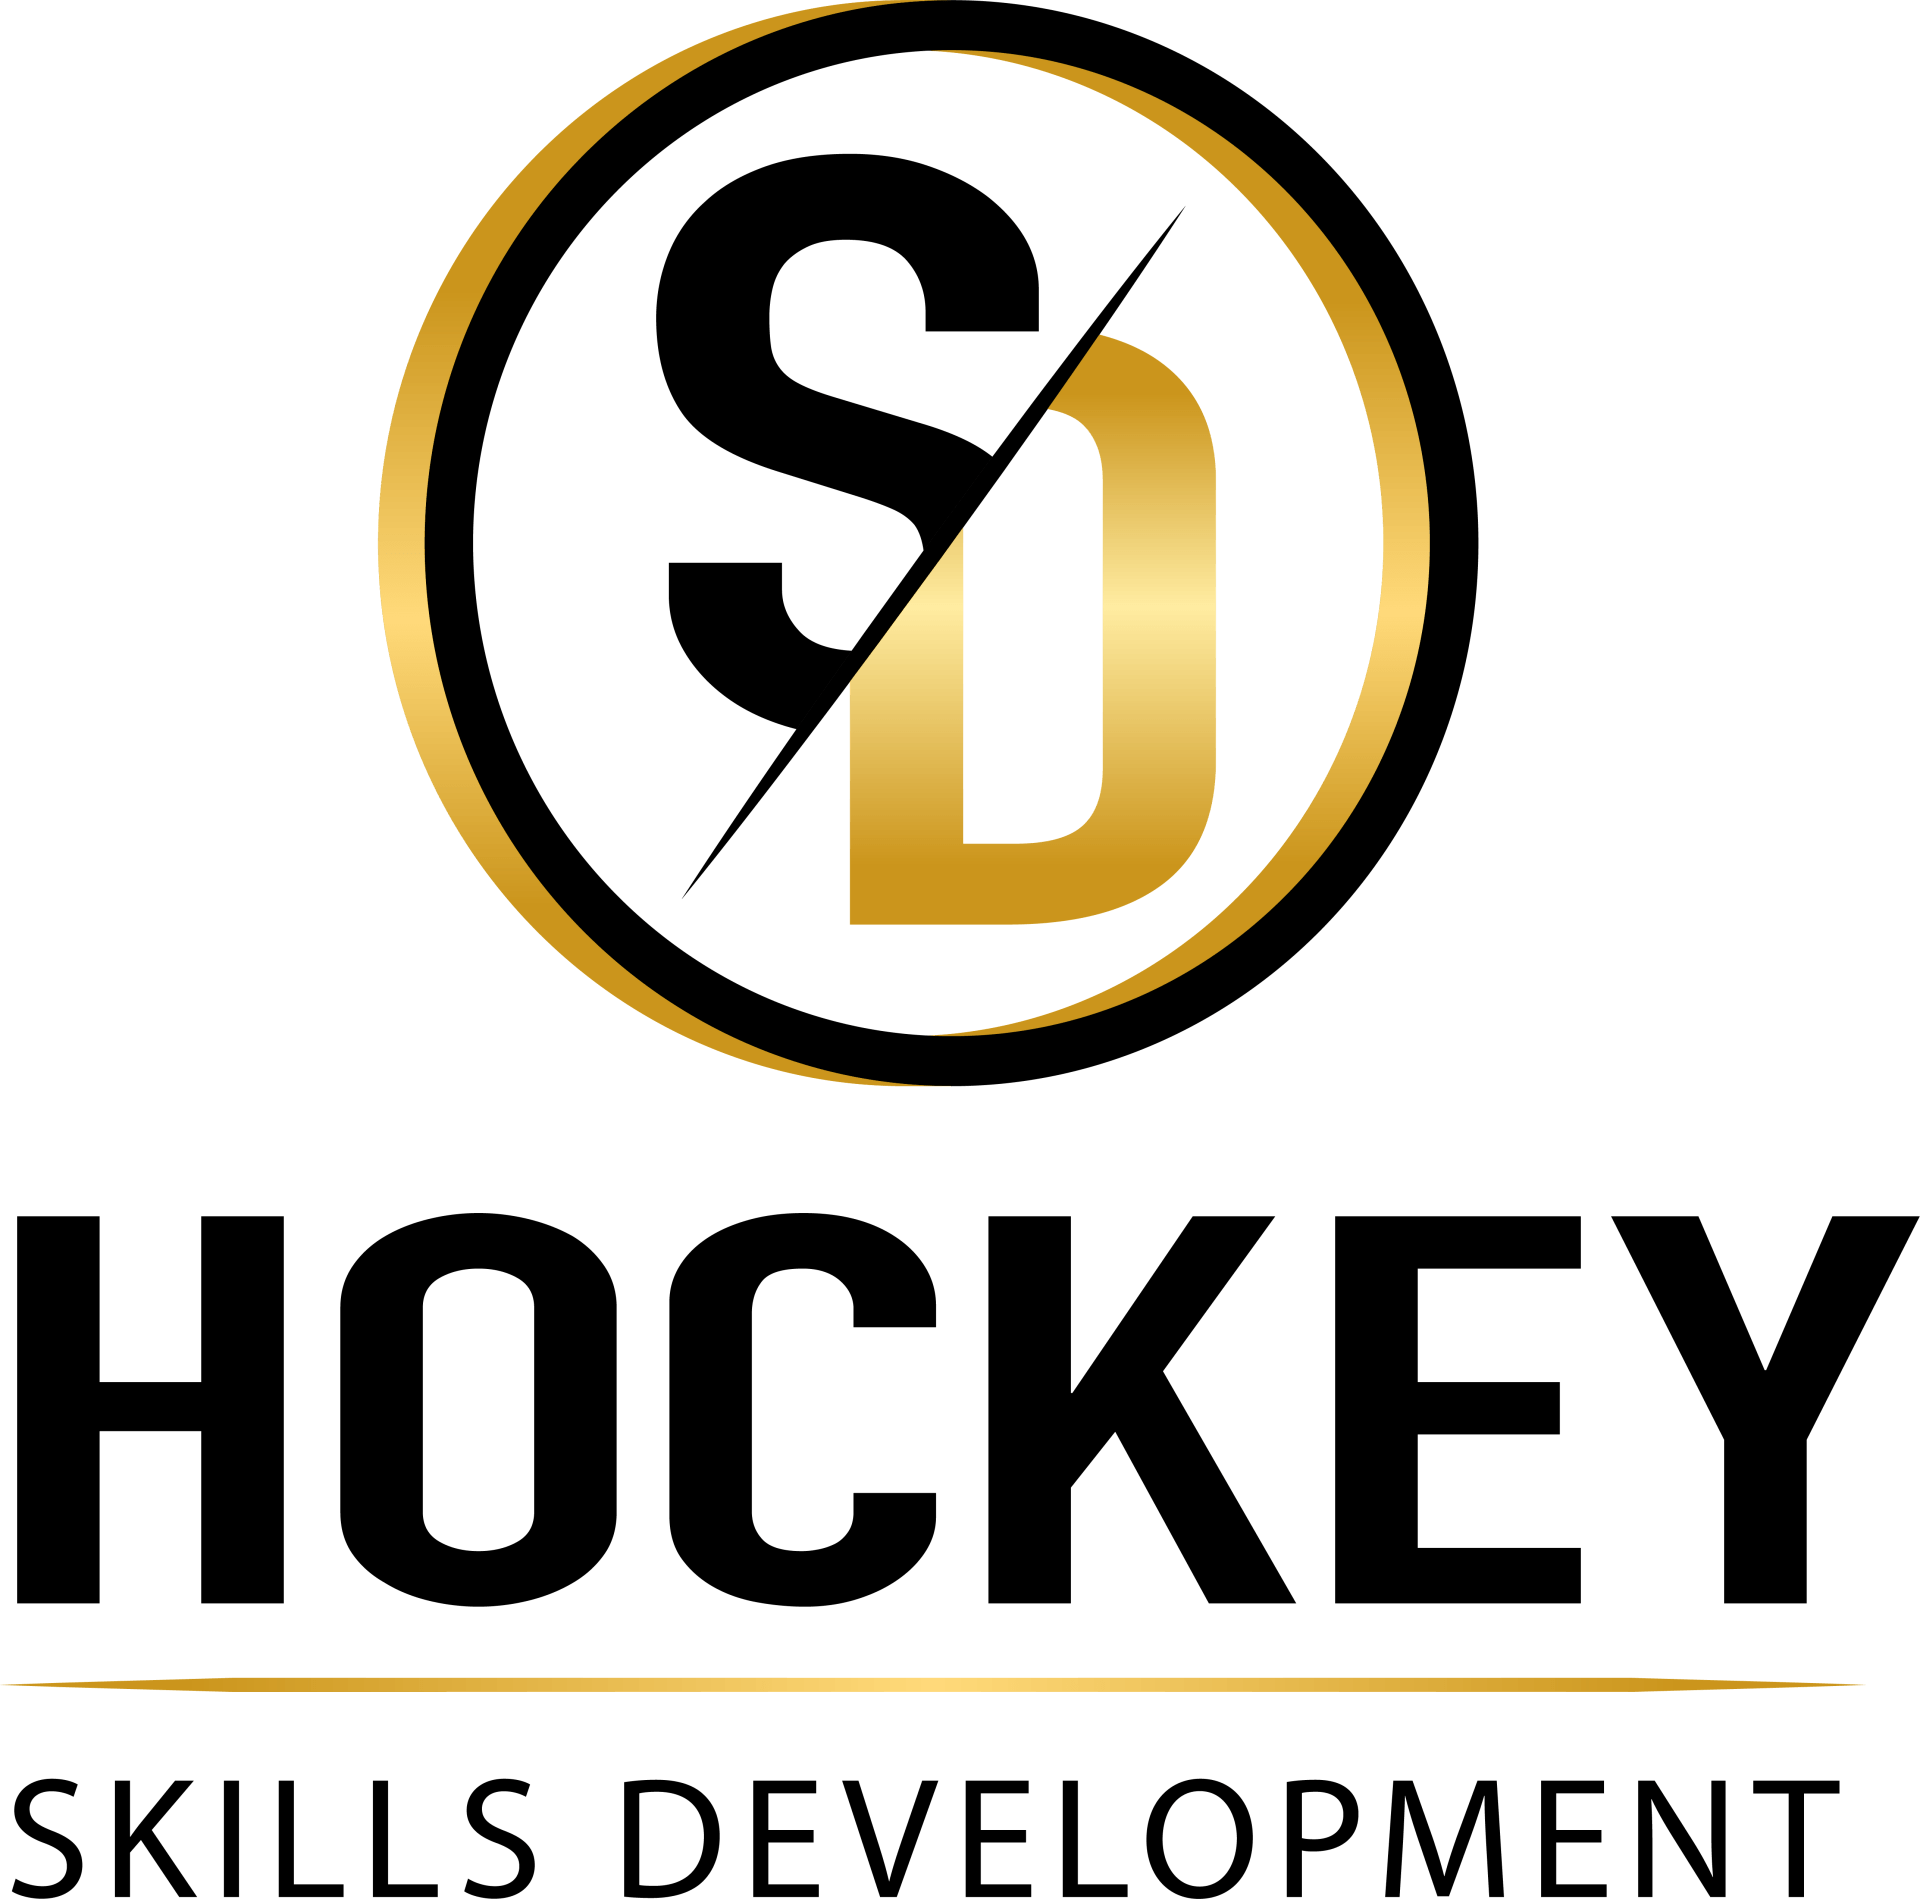 sd-hockey-skills-development